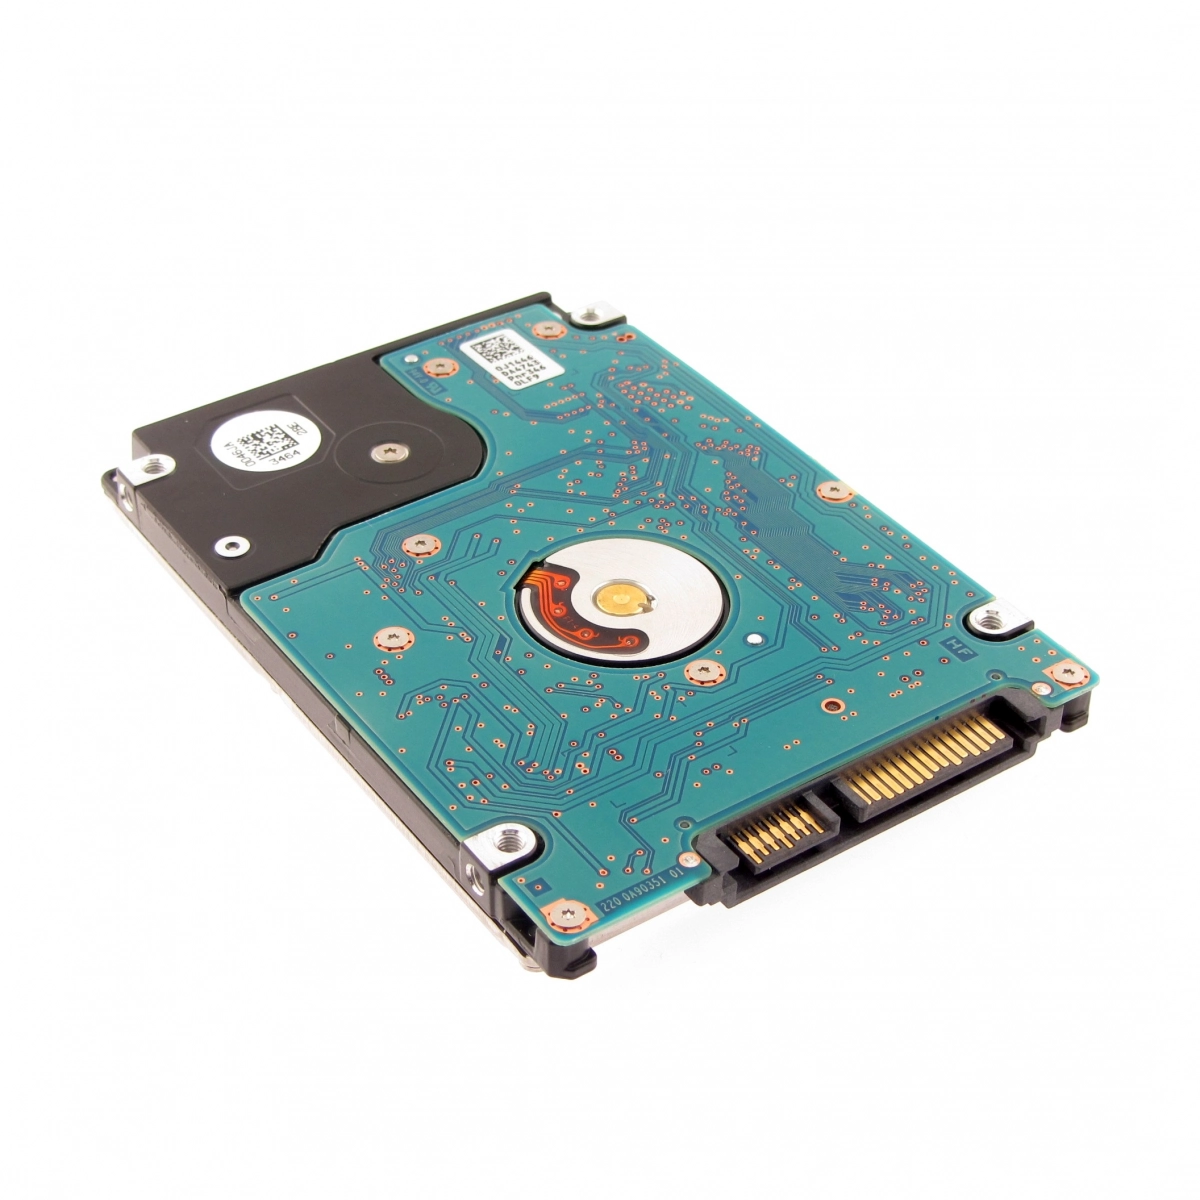 Notebook-Festplatte 1TB, 7mm, 7200rpm, 128MB für DELL Inspiron 15 (3521)